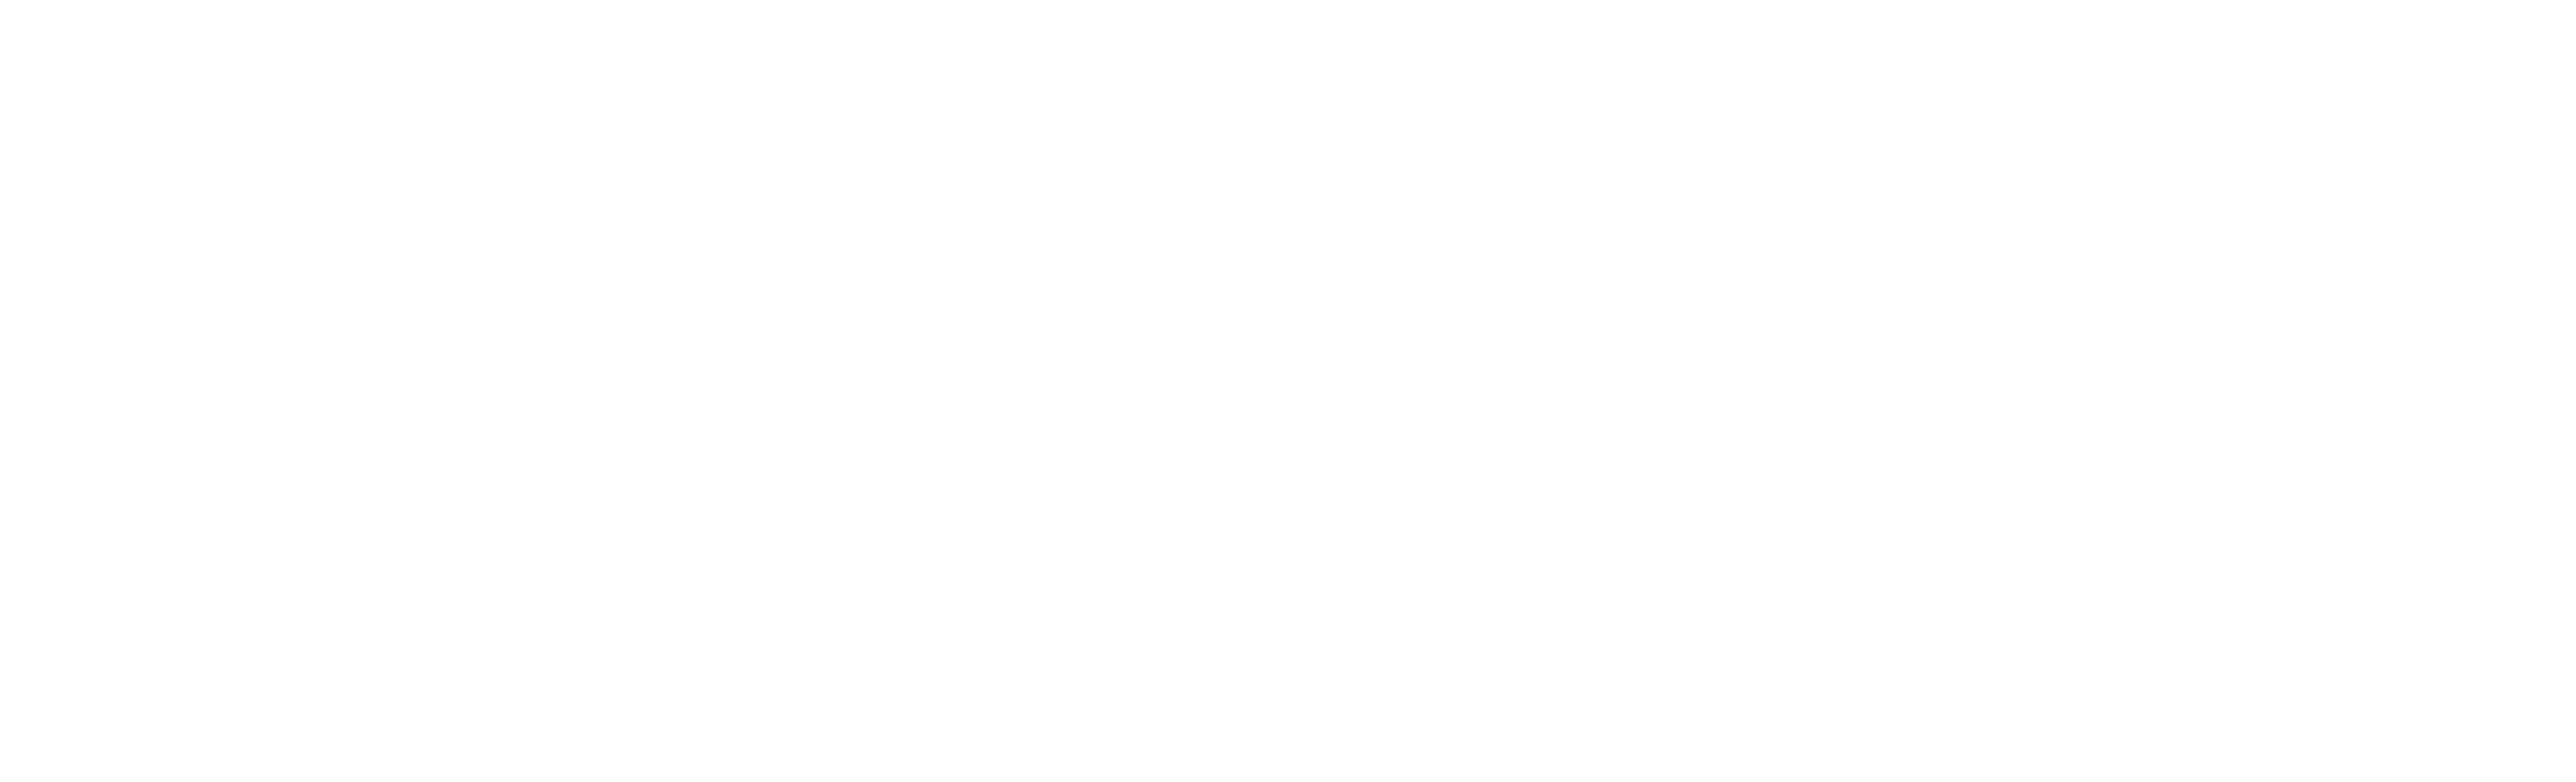 Blended Capital Logo